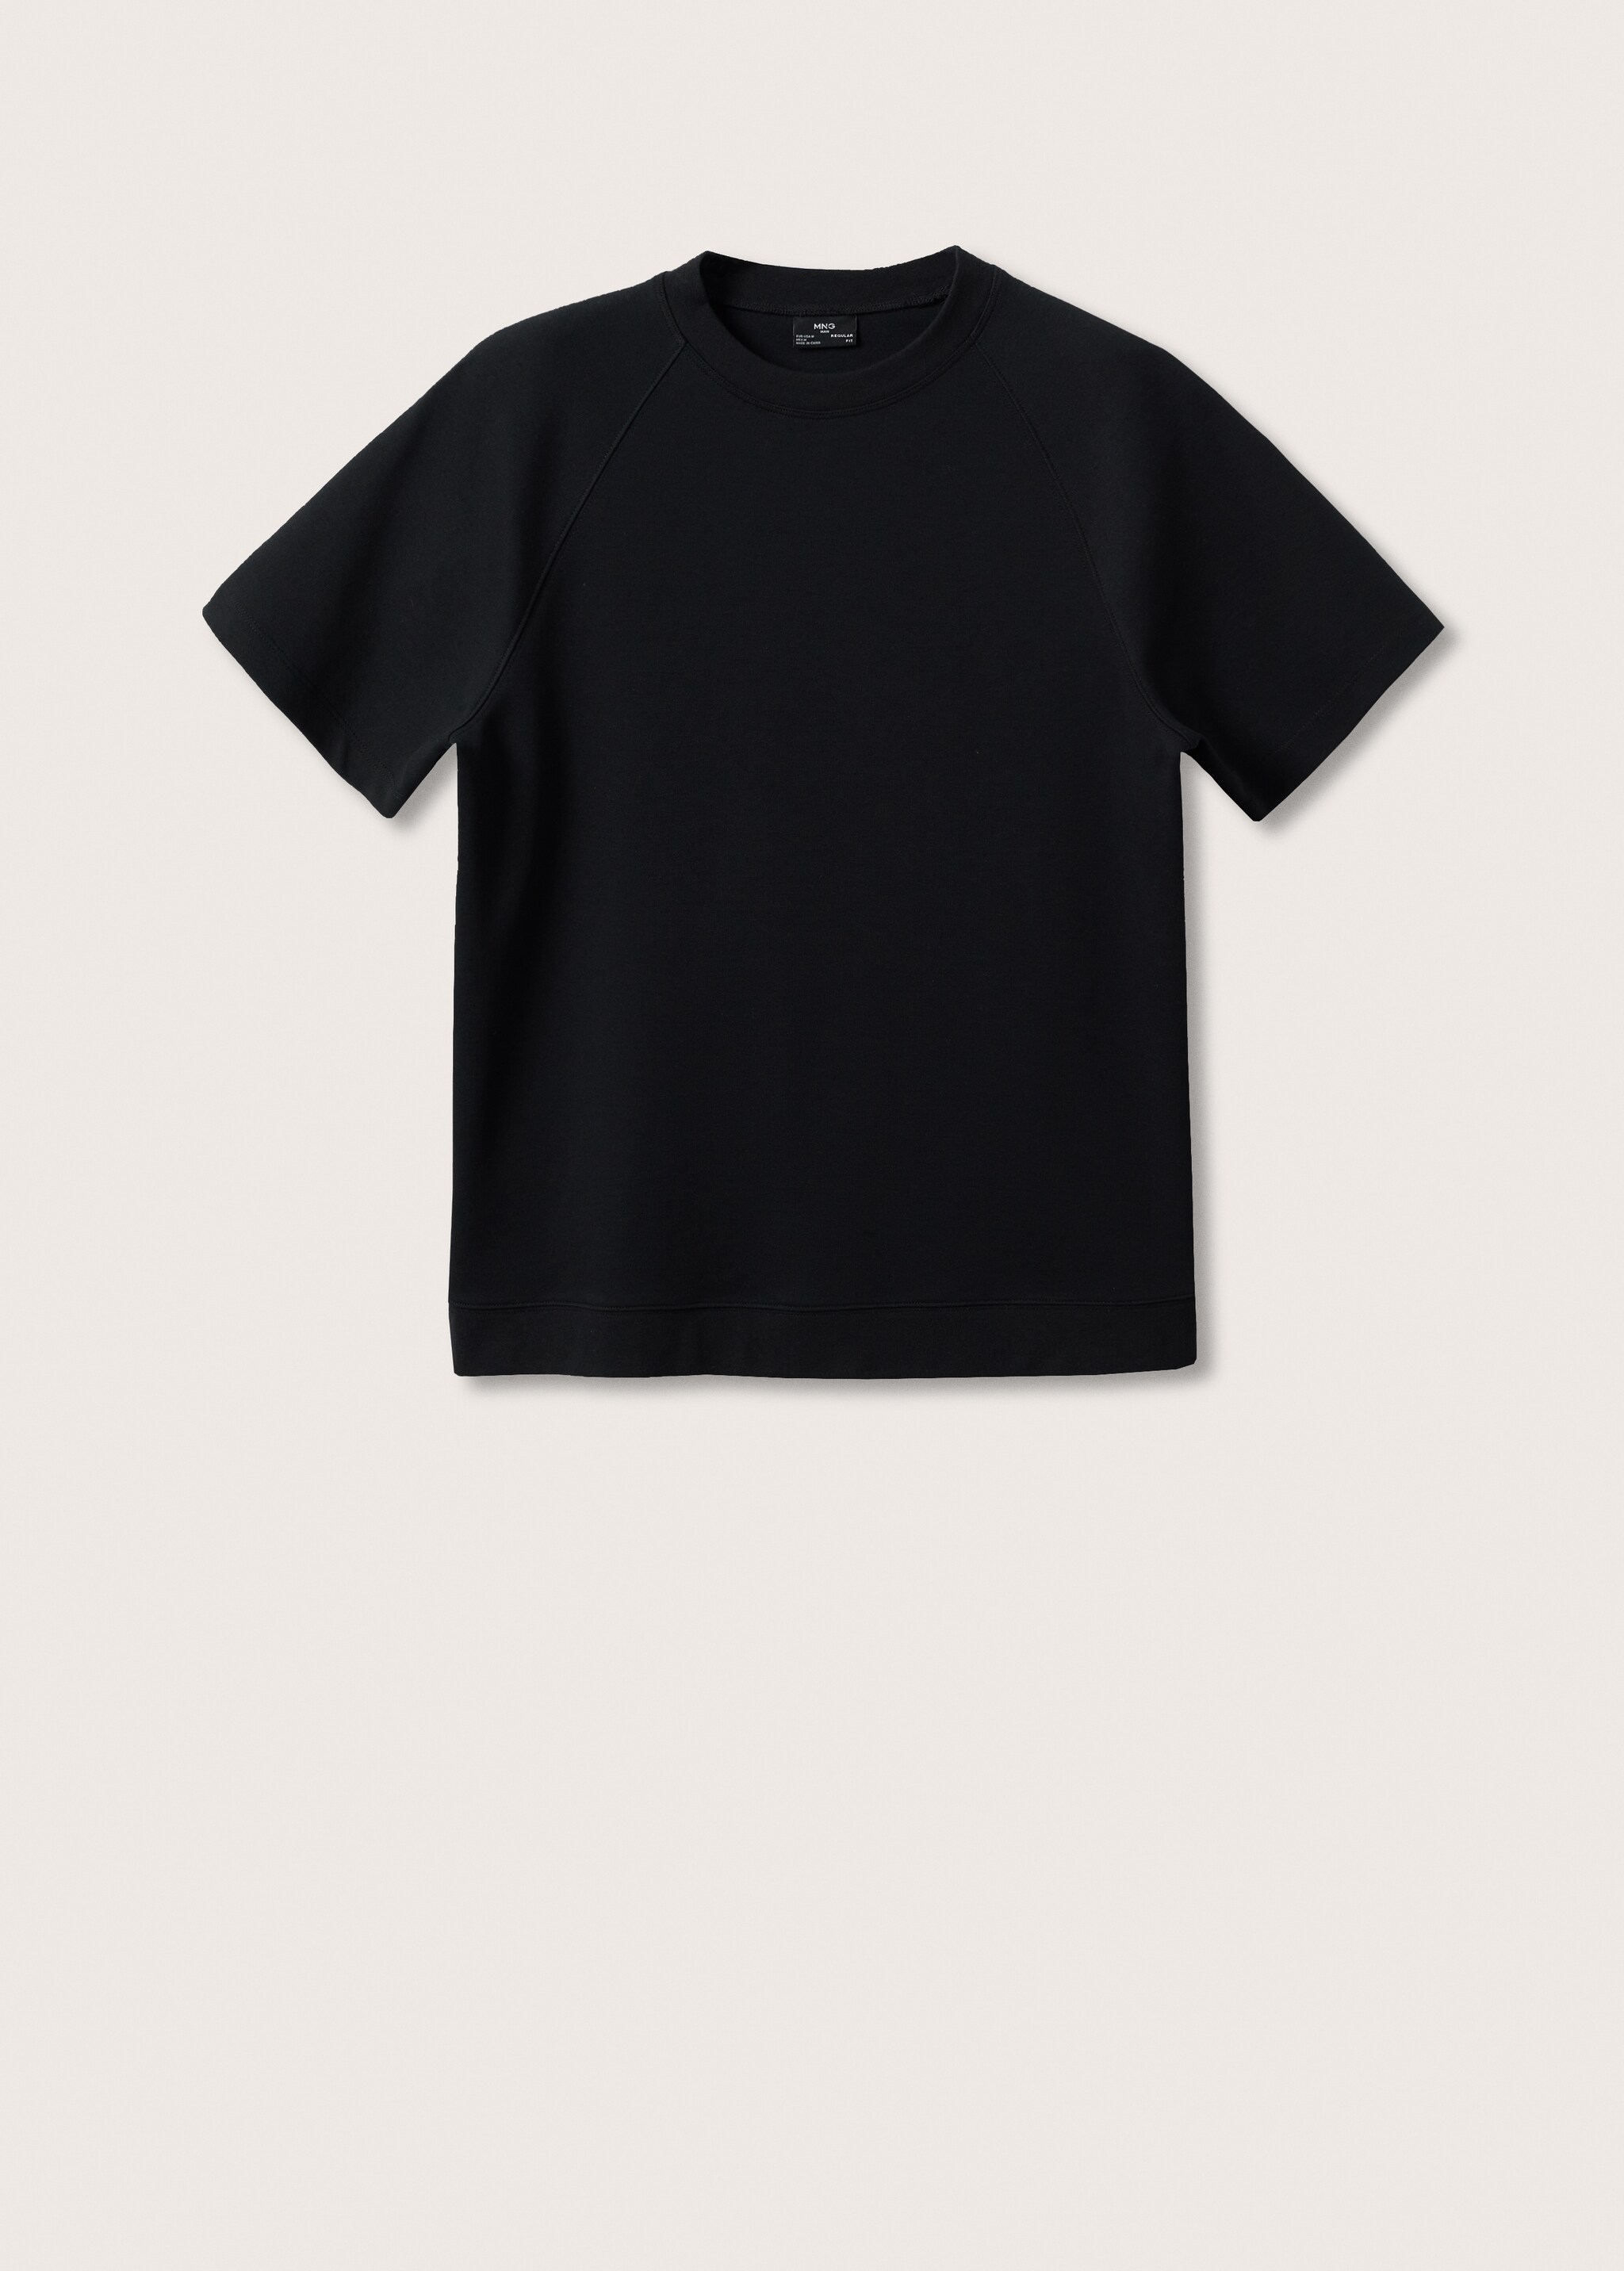 Camiseta algodón tejido grueso - Artículo sin modelo